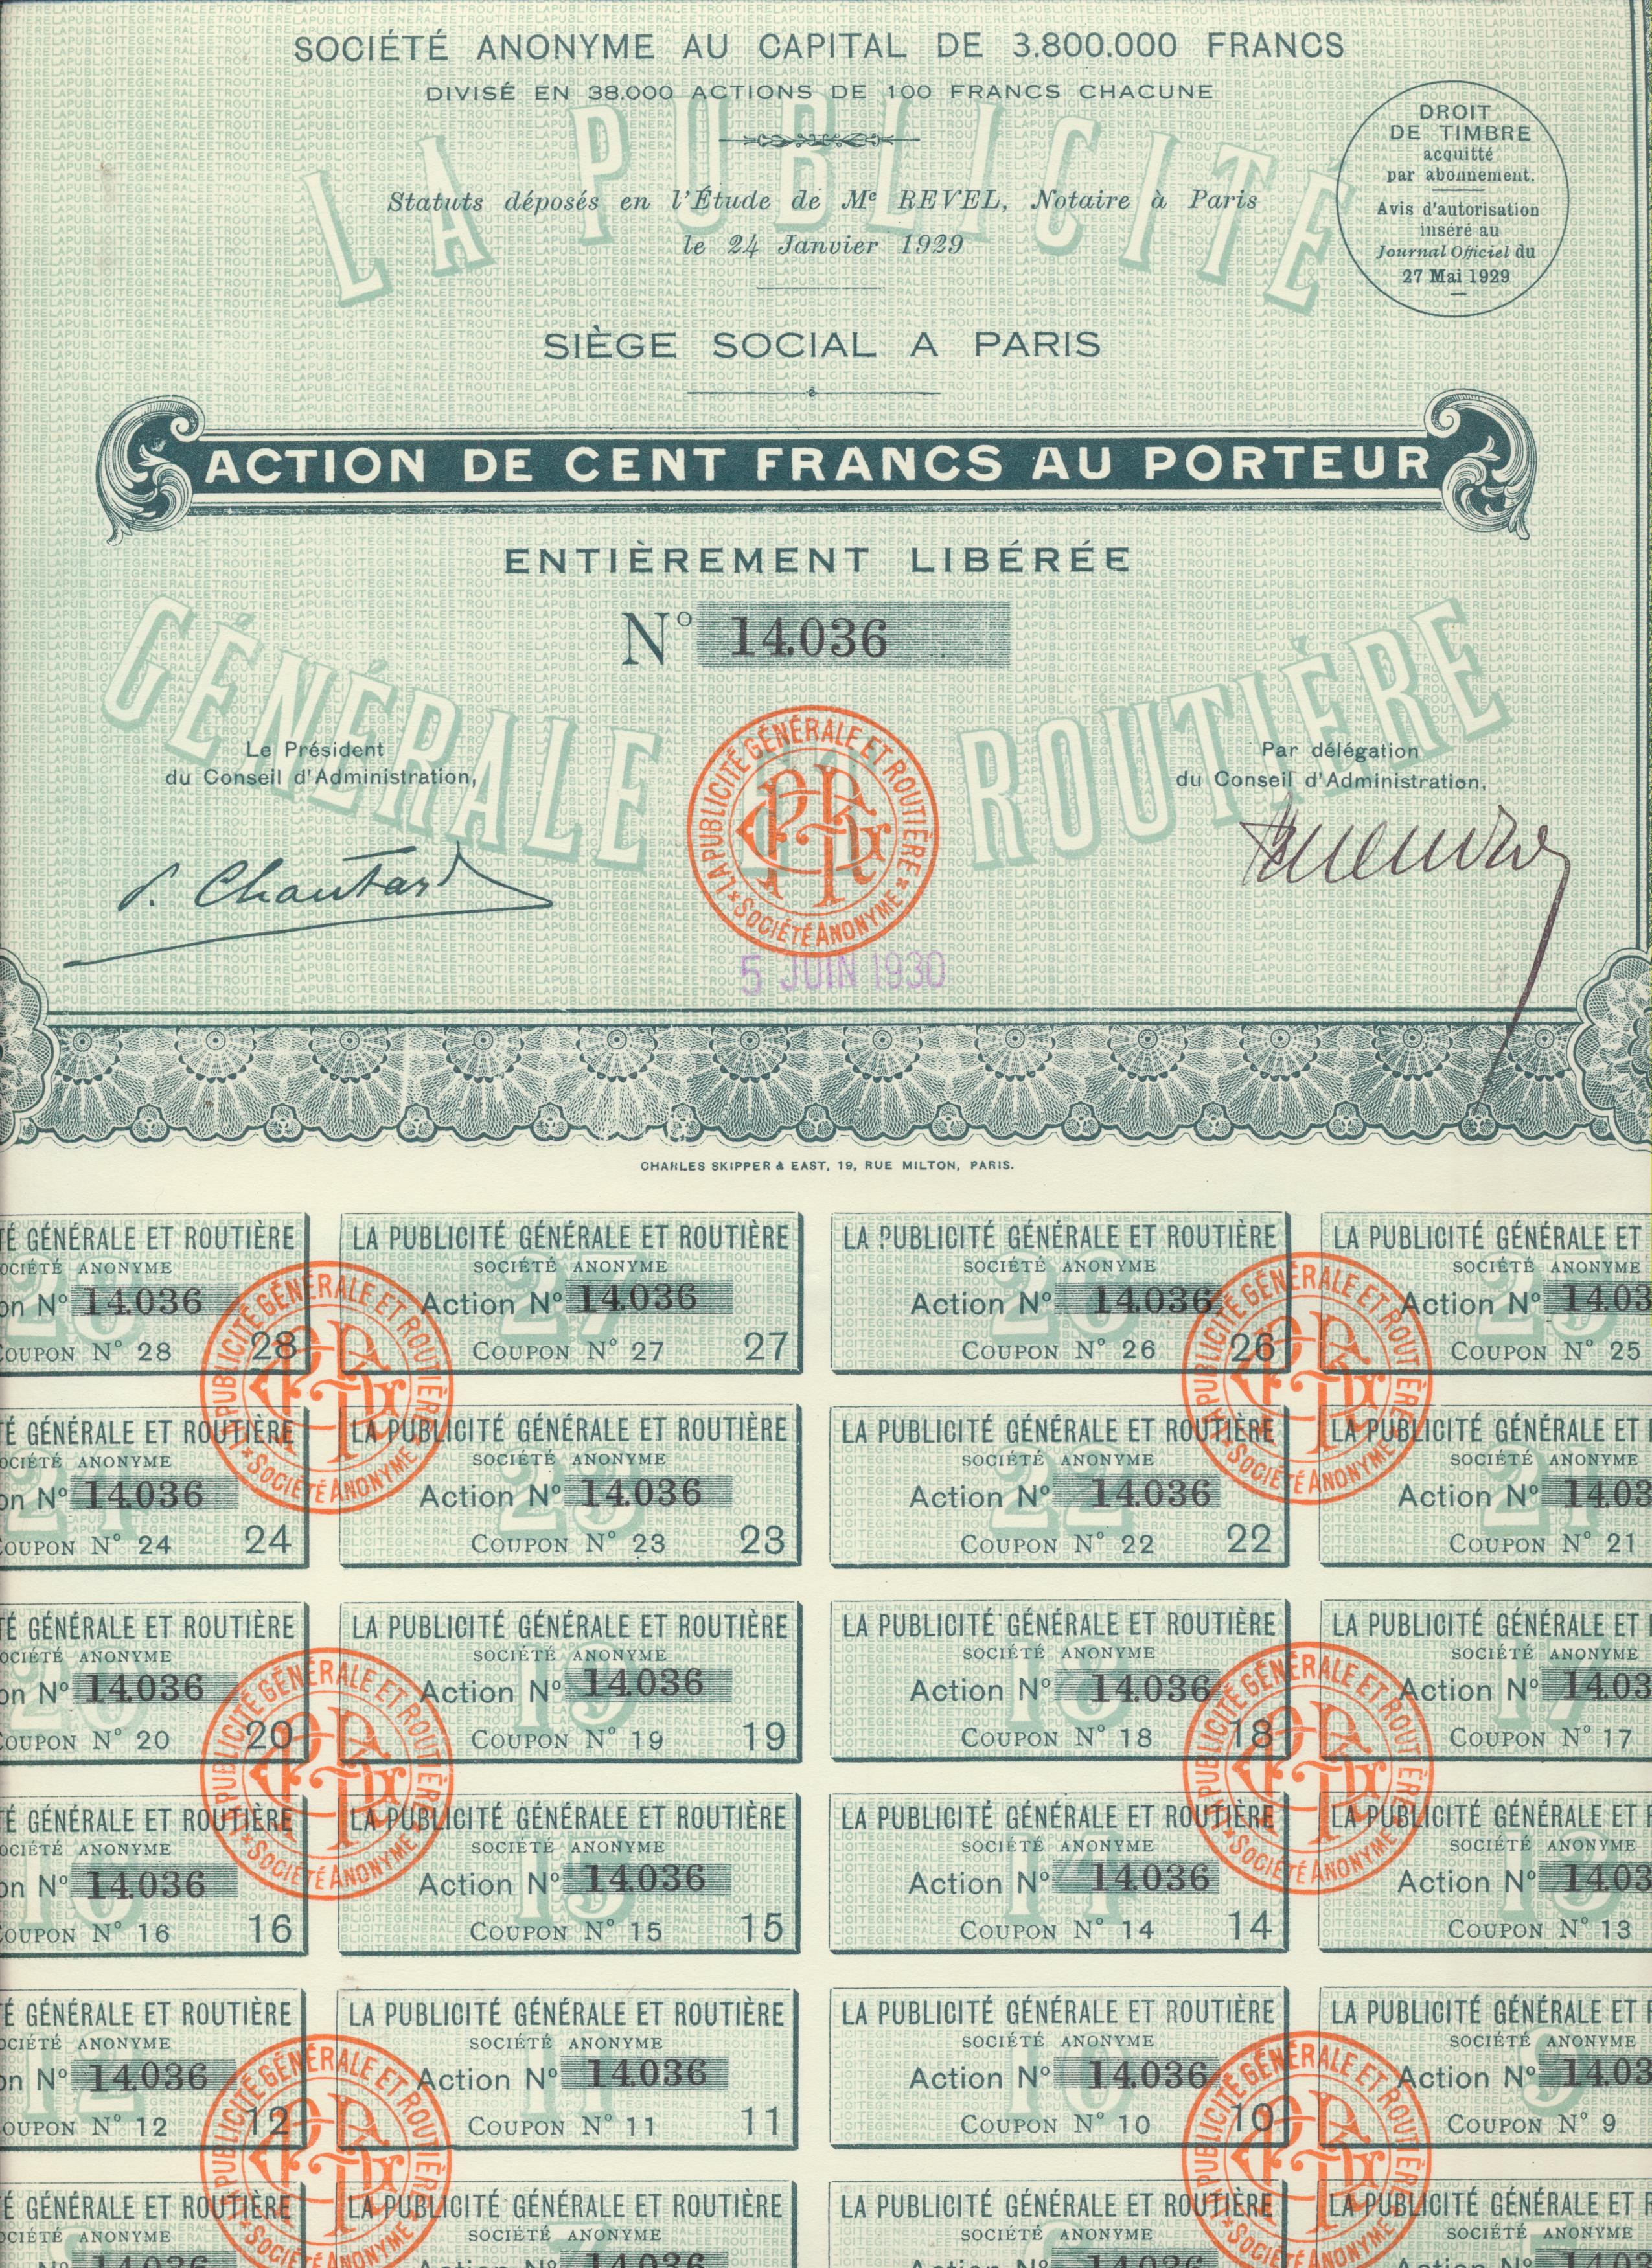 Acción Francesa. La Publicité Générale et Routiére. Paris, 1929